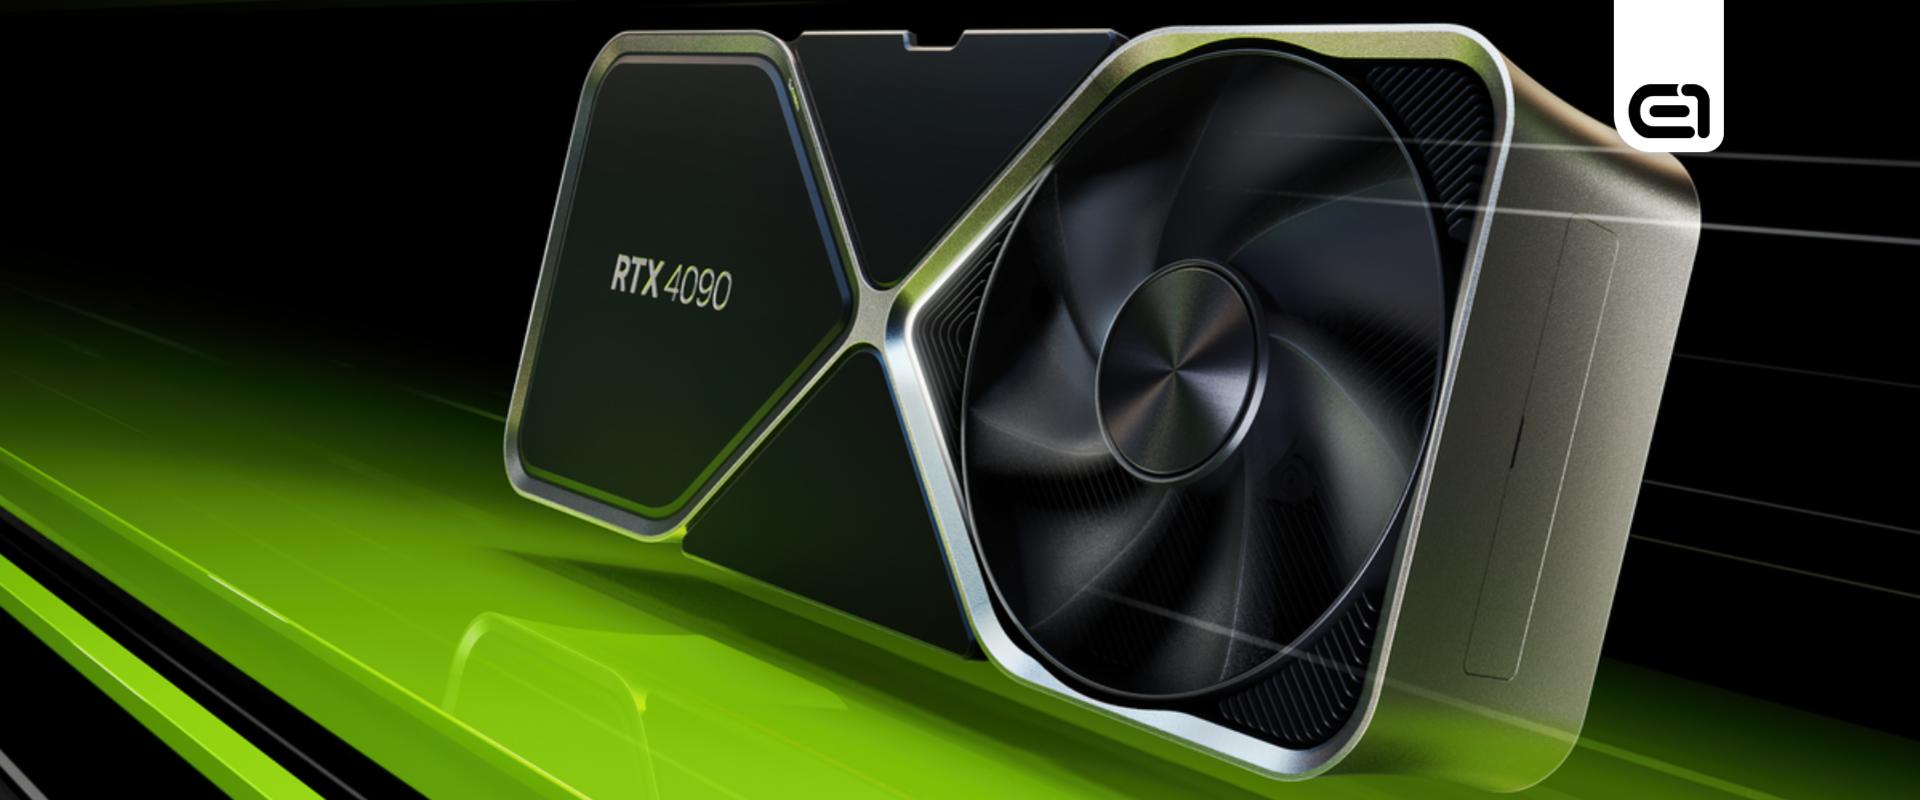 RTX 4090 Ti: Az Nvidia mégsem dobja piacra a legerősebb videokártyáját